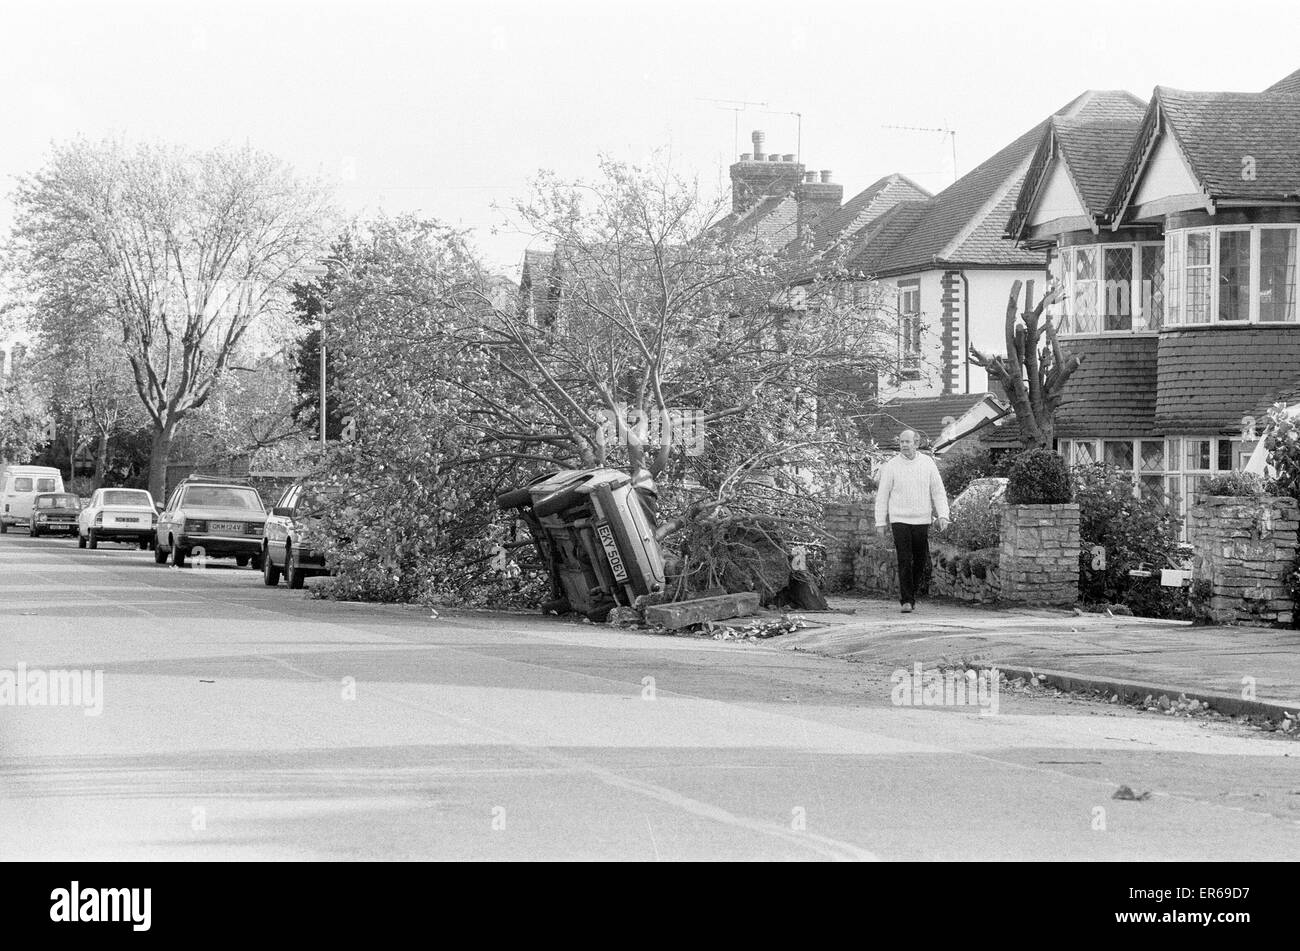 La grande tempête de 1987 s'est produit la nuit du 15 au 16 octobre 1987. Un système météorologique exceptionnelle des vents dus à frapper une grande partie du sud de l'Angleterre et le nord de la France. C'était la pire tempête à frapper l'Angleterre depuis la grande tempête de 1703. Dommage a été l'esti Banque D'Images